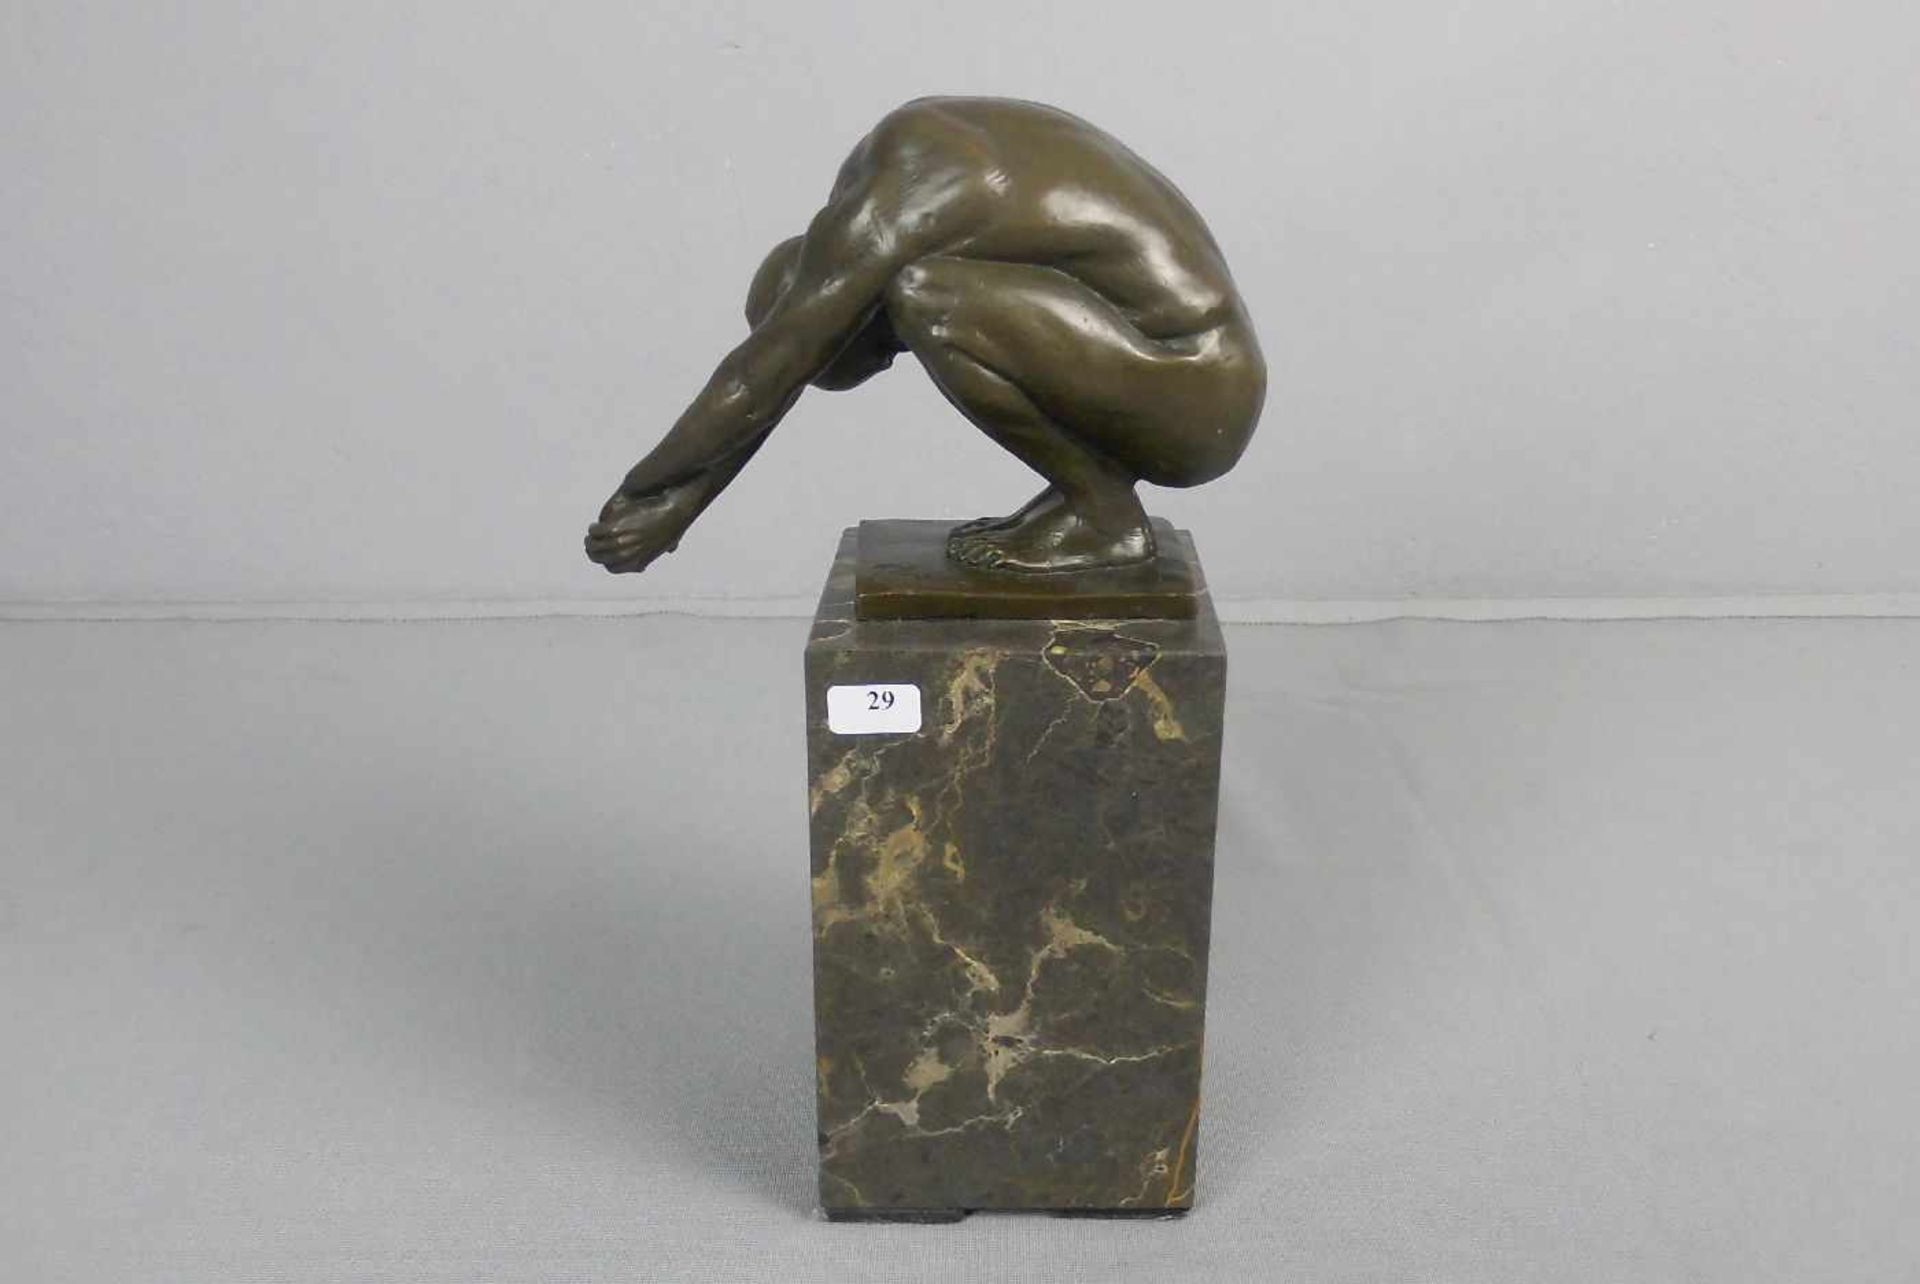 LOPEZ, MIGUEL FERNANDO (auch Milo, geb. 1955 in Lissabon), Skulptur / sculpture: "Hockender